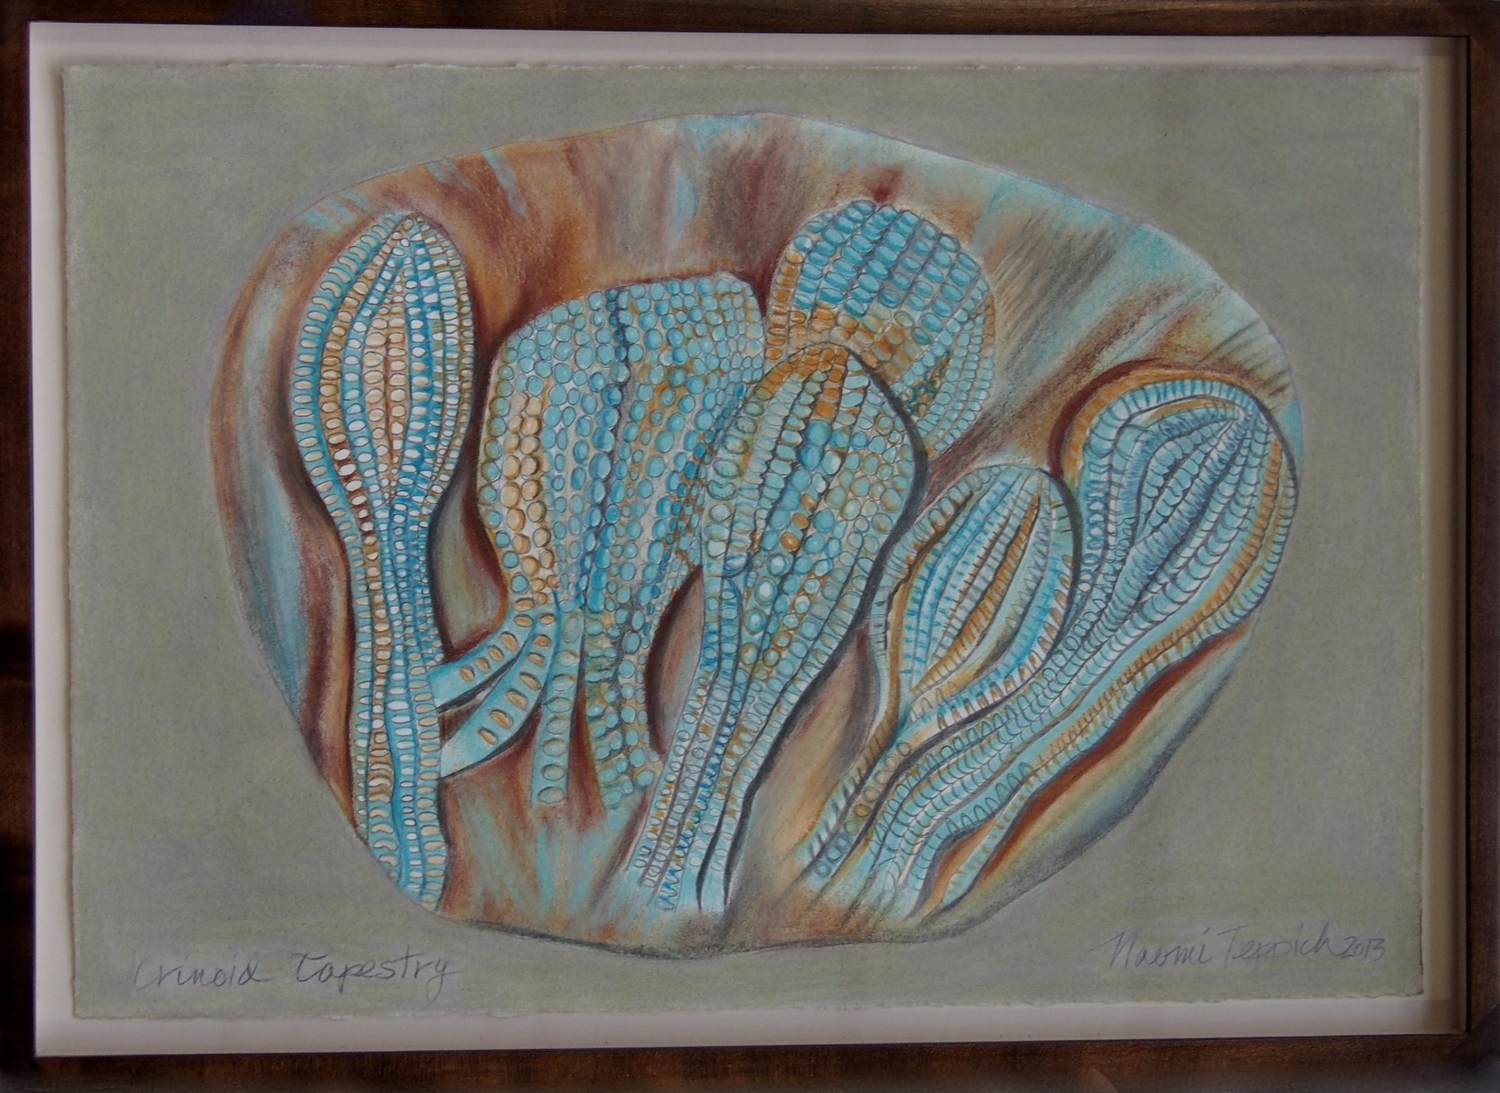 Crinoid Tapestry  2013